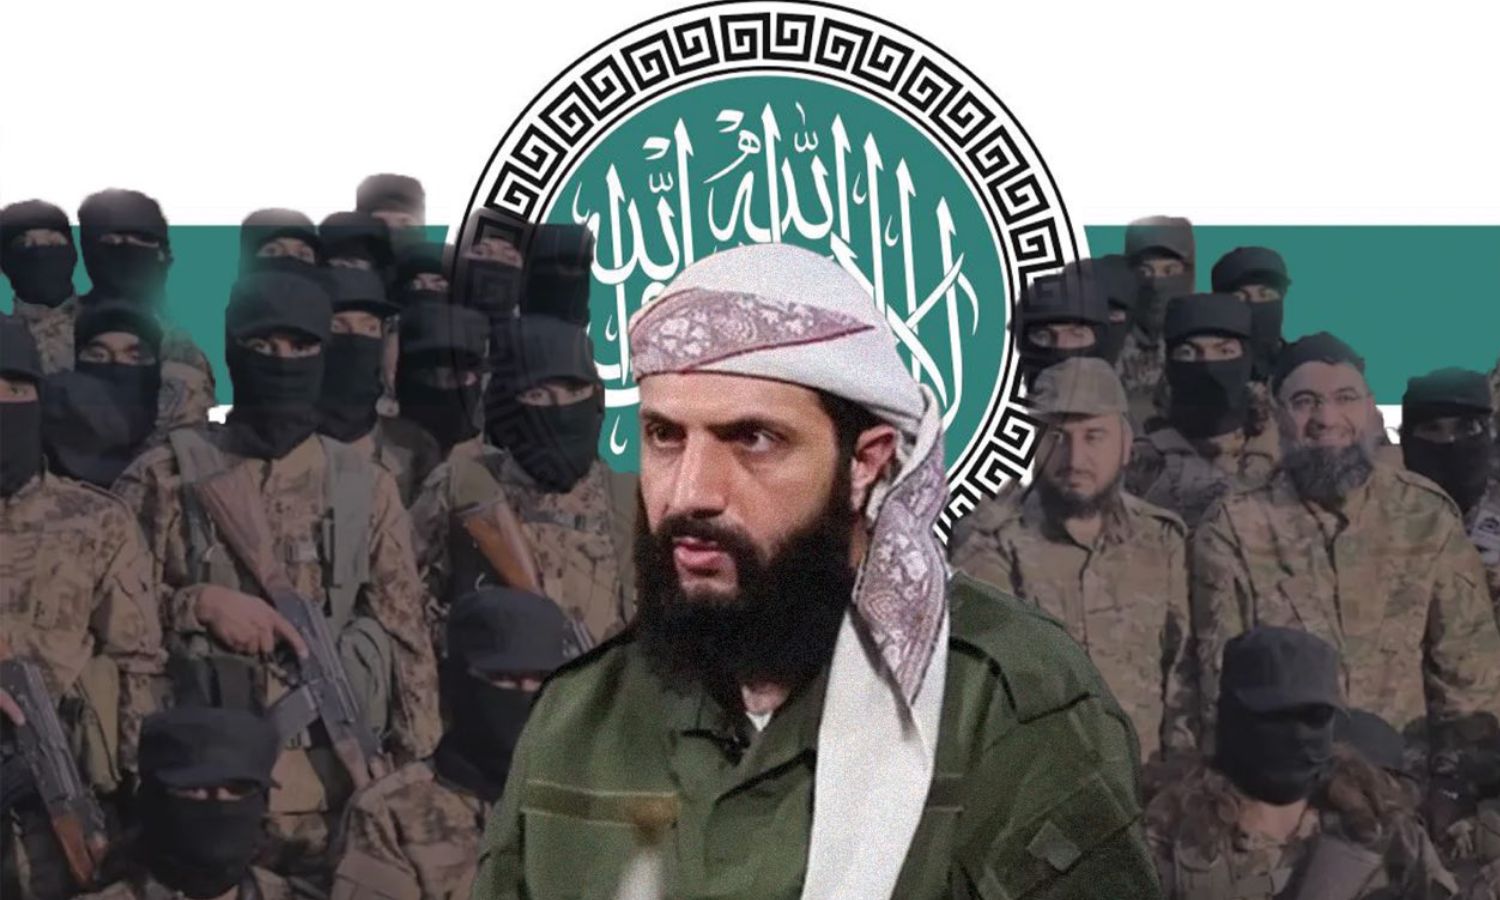 القائد العام لـ "هيئة تحرير الشام" أبو محمد الجولاني ومقاتلون في الفصيل (تعديل عنب بلدي)